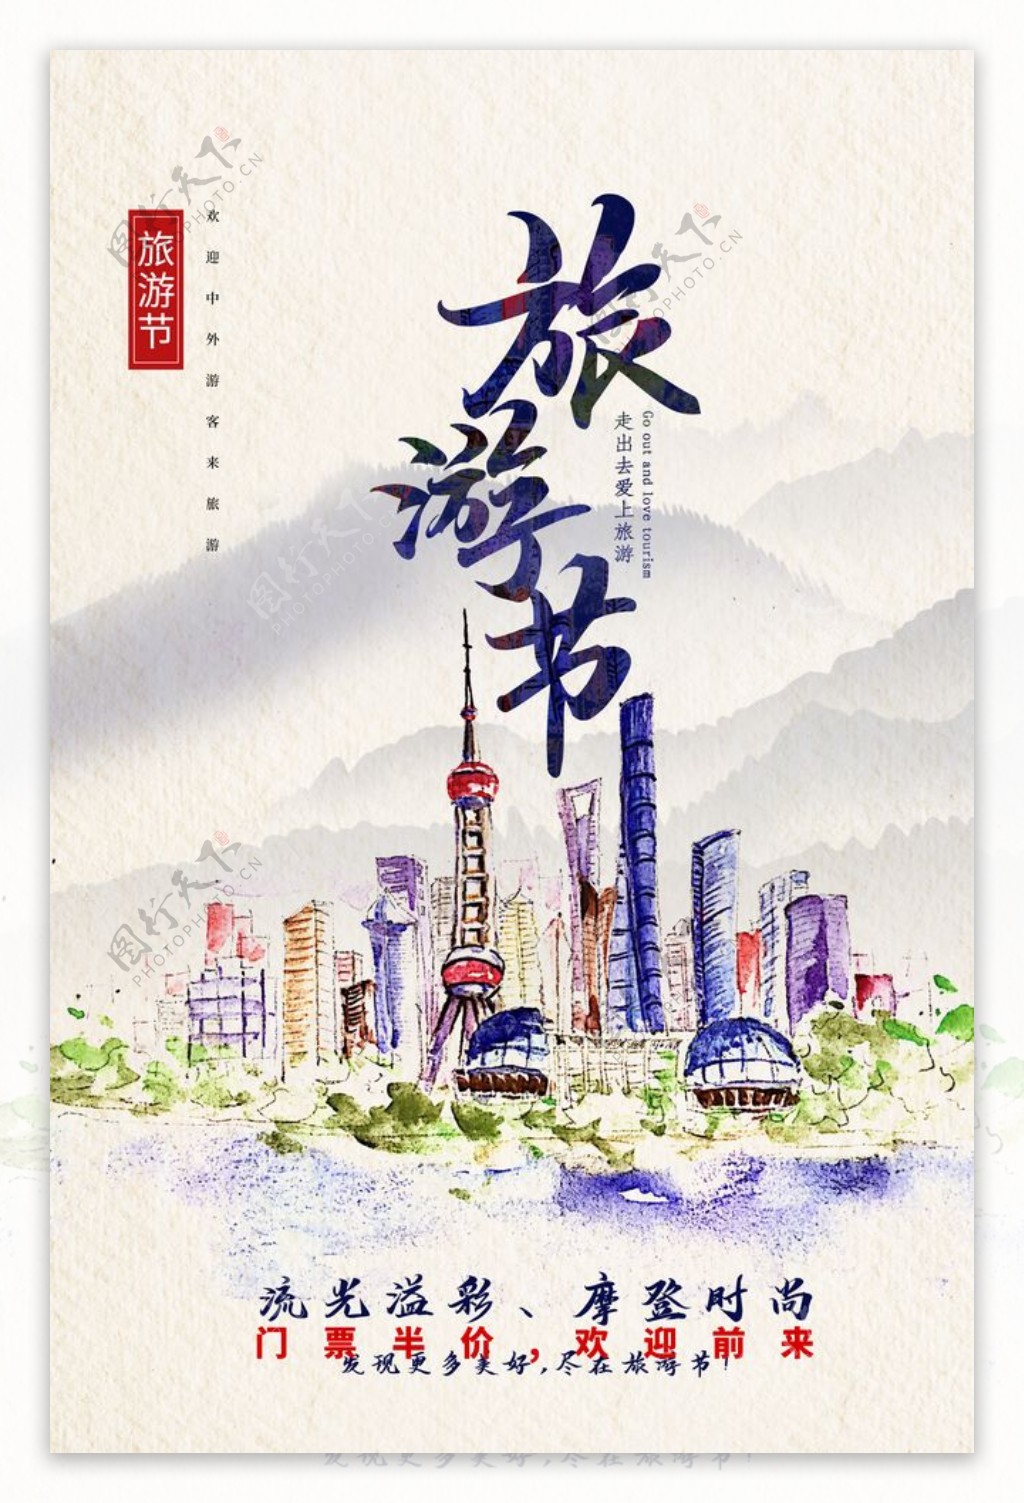 上海旅游旅行活动海报素材